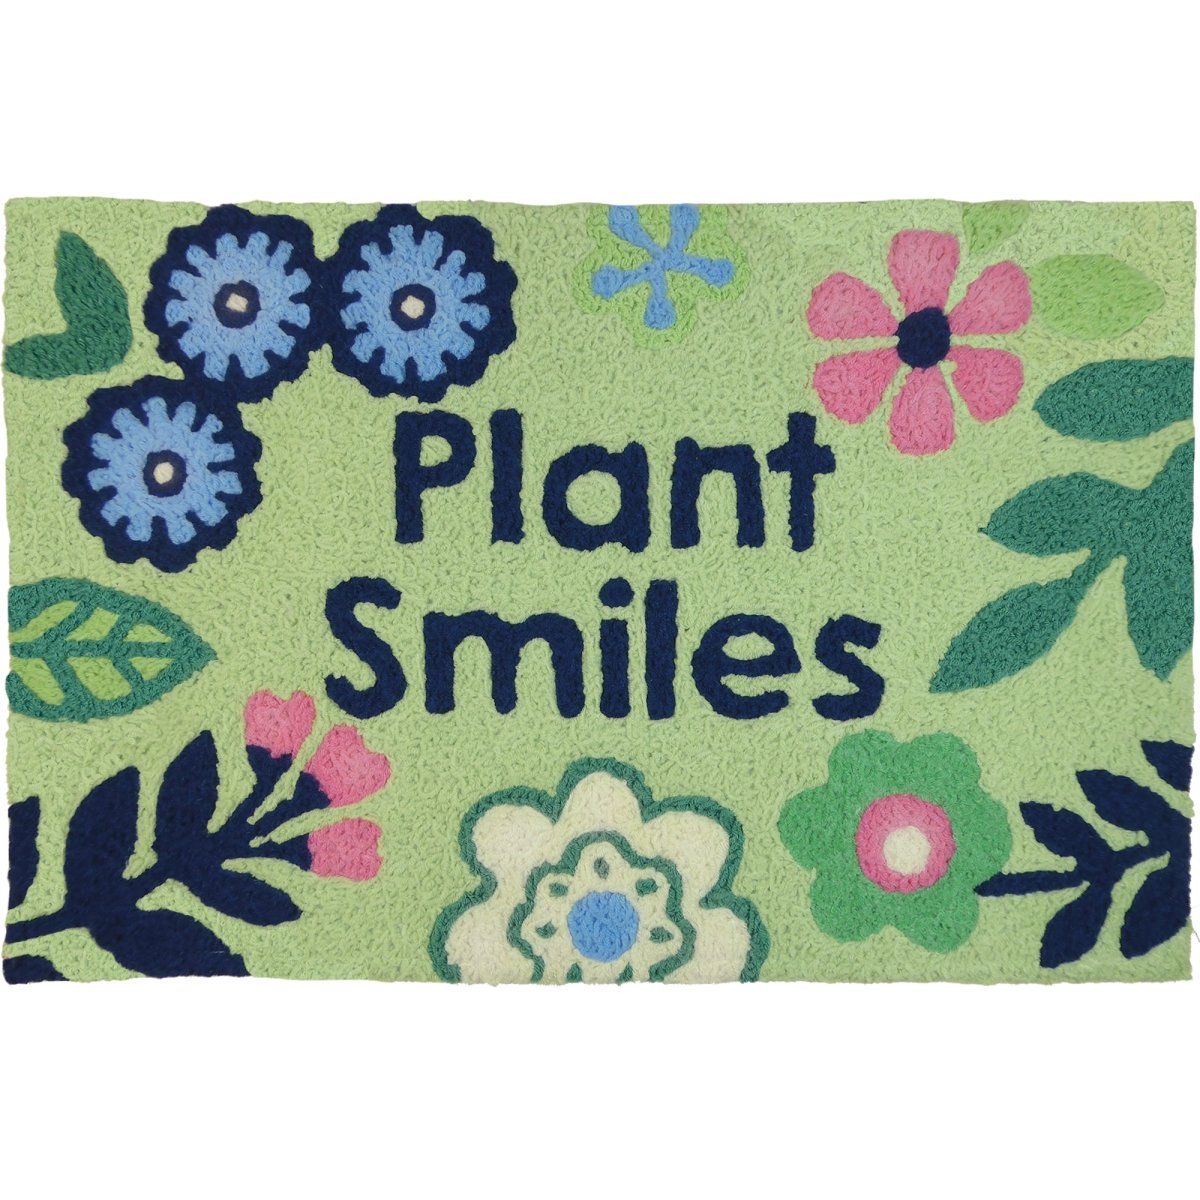 Jb-jb153 20 X 30 In. Plant Smiles Rug